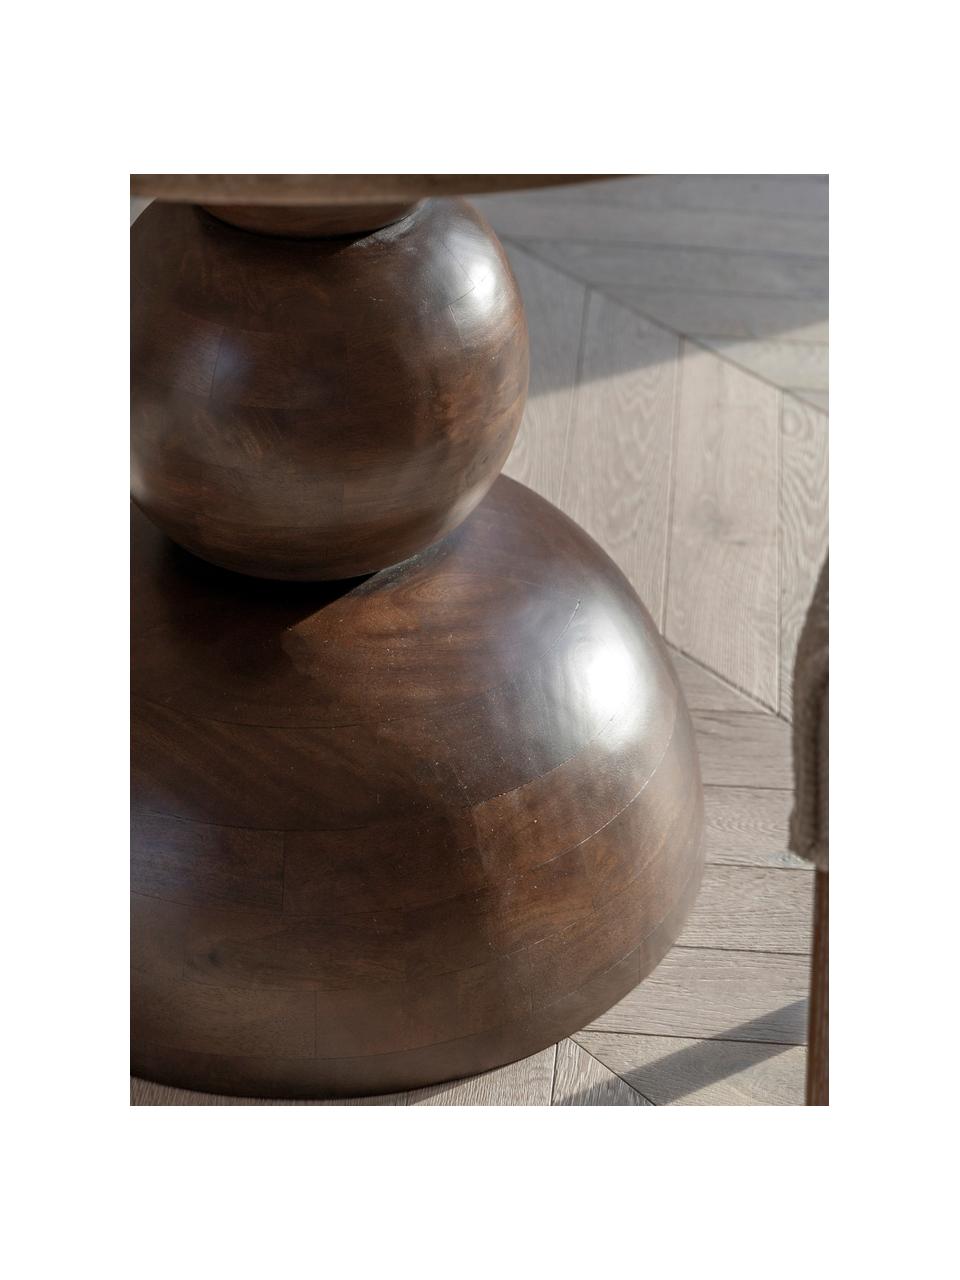 Okrągły stół do jadalni z trawertynowym blatem Trevi, Ø 110 cm, Blat: trawertyn, Nogi: drewno mangowe, Drewno mangowe, beżowy trawertyn, Ø 110 cm